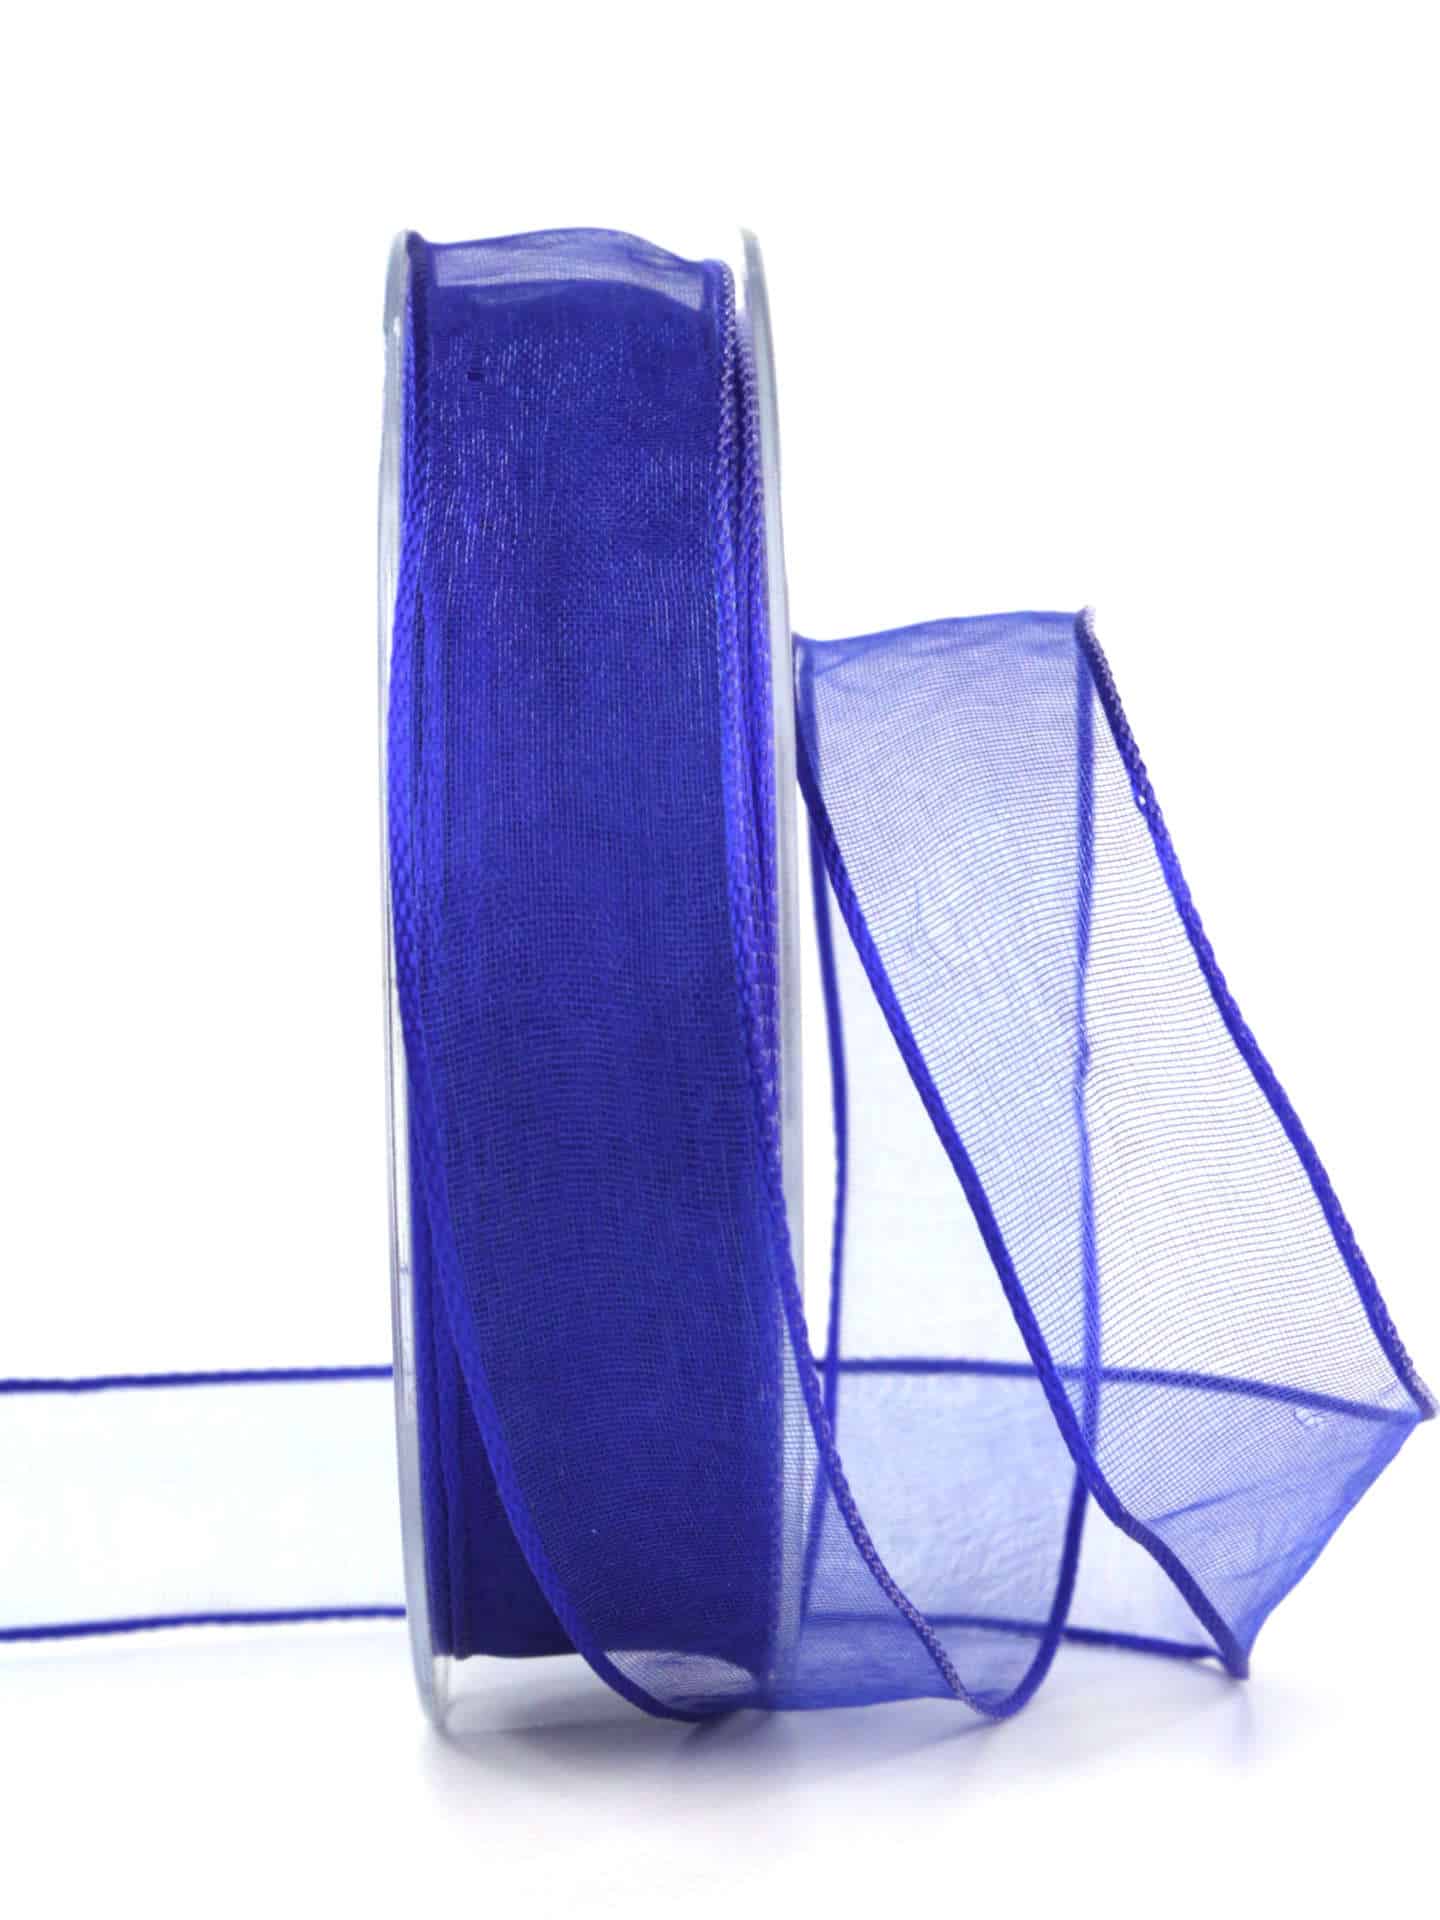 Organzaband mit Drahtkante, royalblau, 25 mm breit - organzaband-mit-drahtkante, geschenkbaender, organzabaender